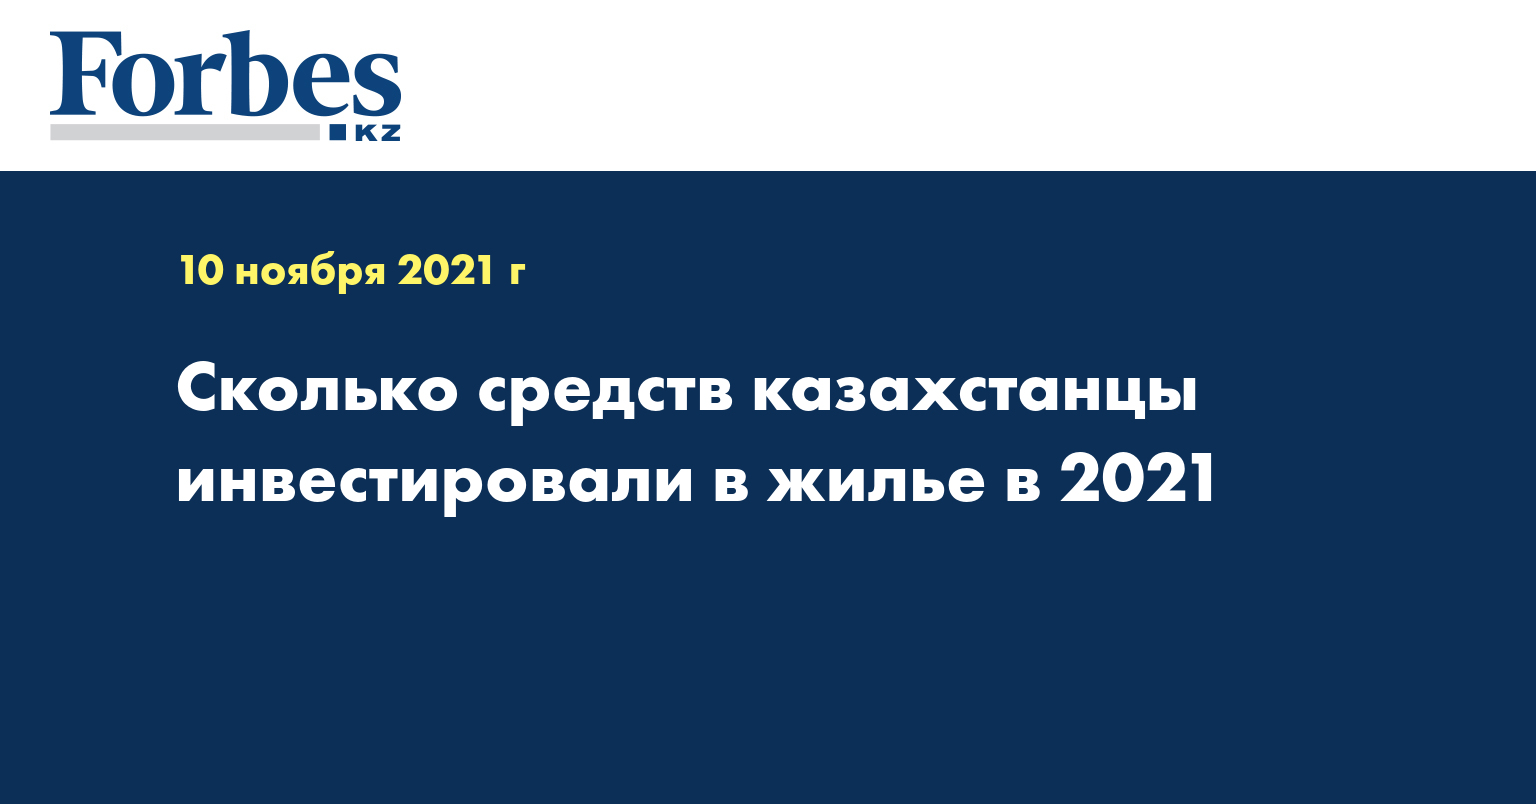 Сколько средств казахстанцы инвестировали в жилье в 2021